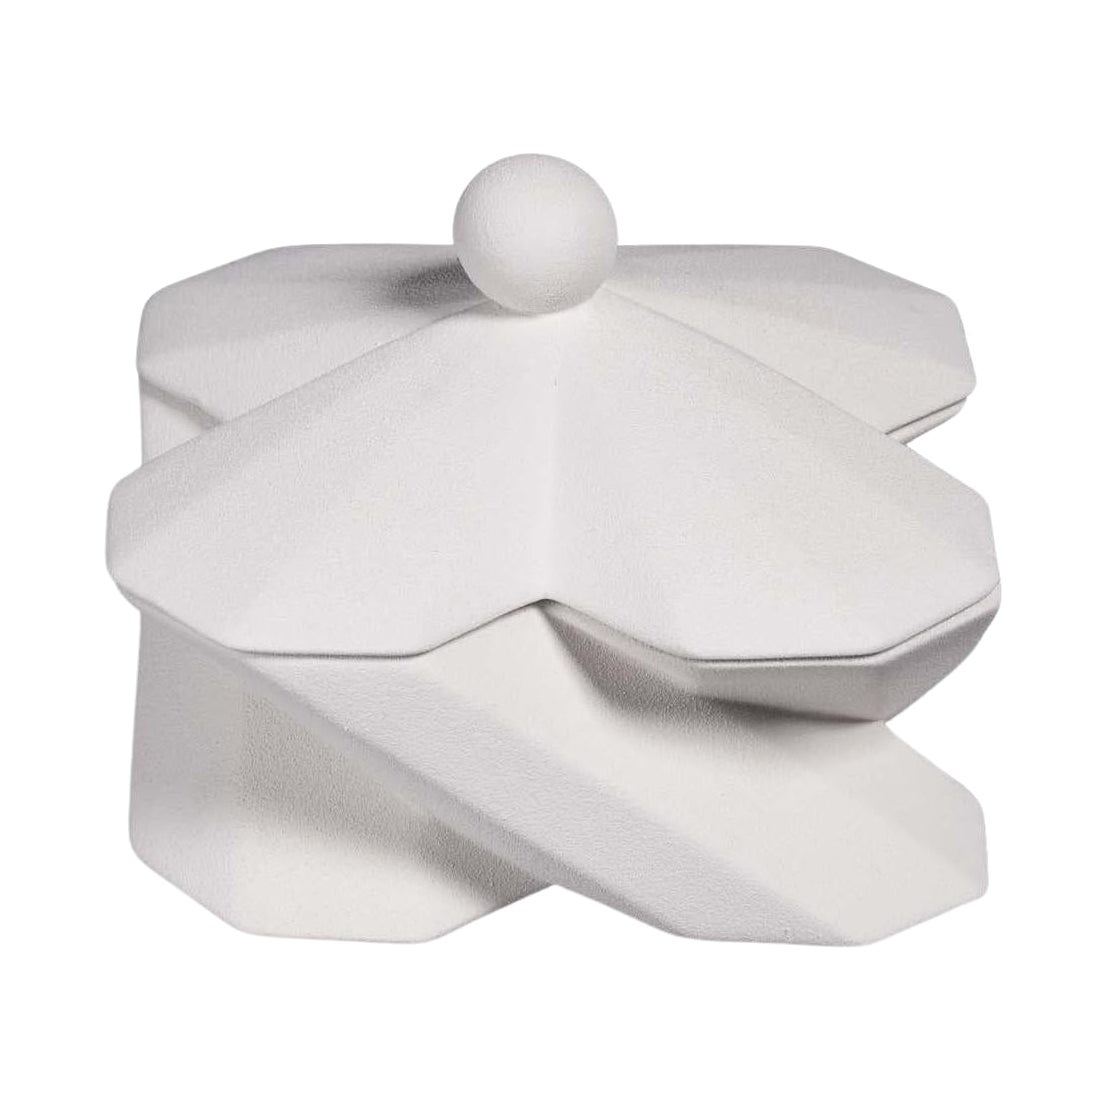 Lara Bohinc Fortress Treasury Box White Ceramic Geometric Contemporary, in Stock For Sale